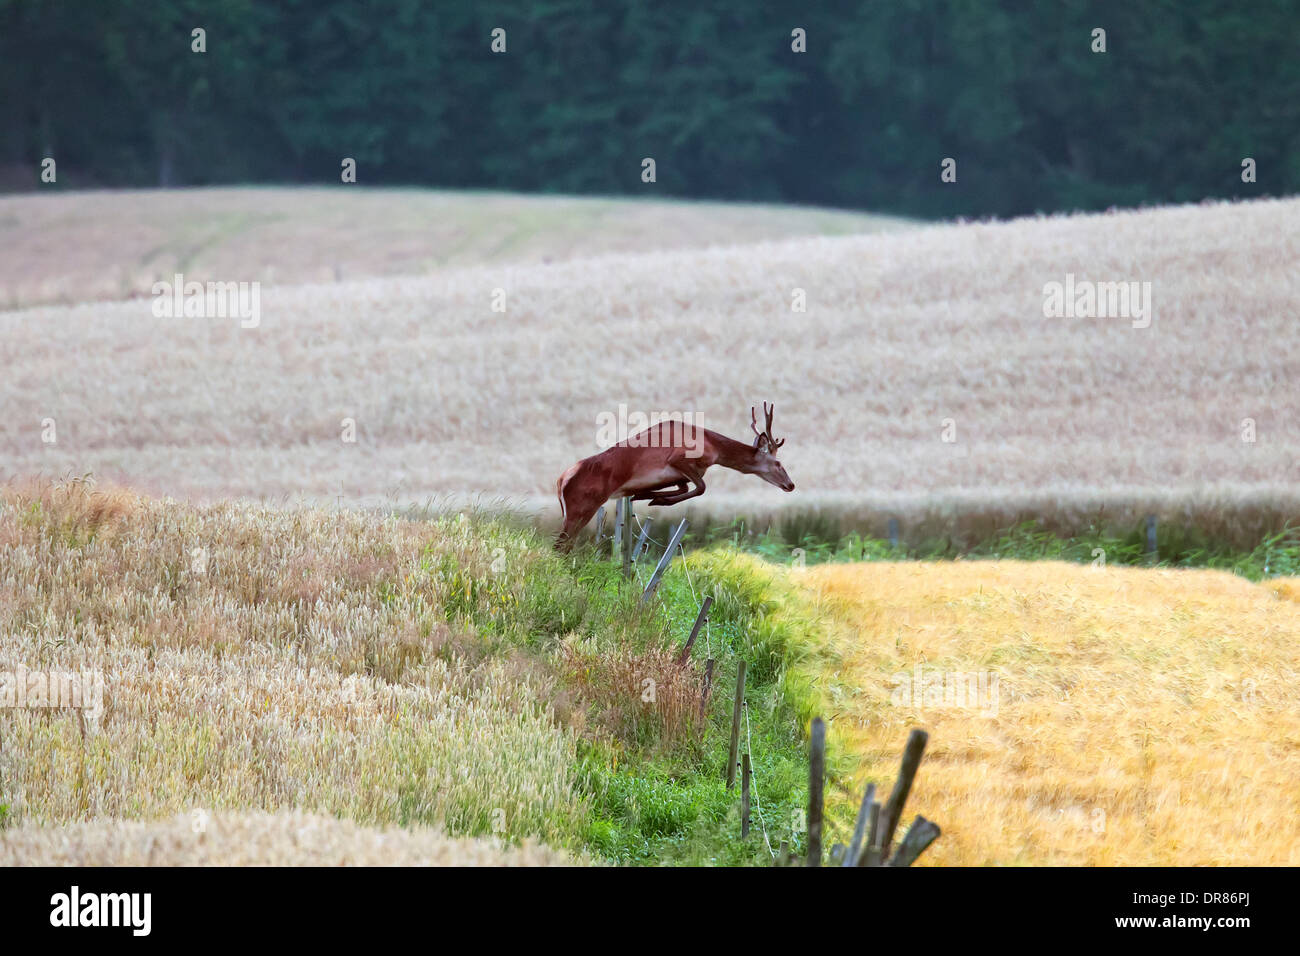 Red Deer (Cervus elaphus) stag jumping over fence entre champs de blé dans les terres agricoles à l'automne Banque D'Images